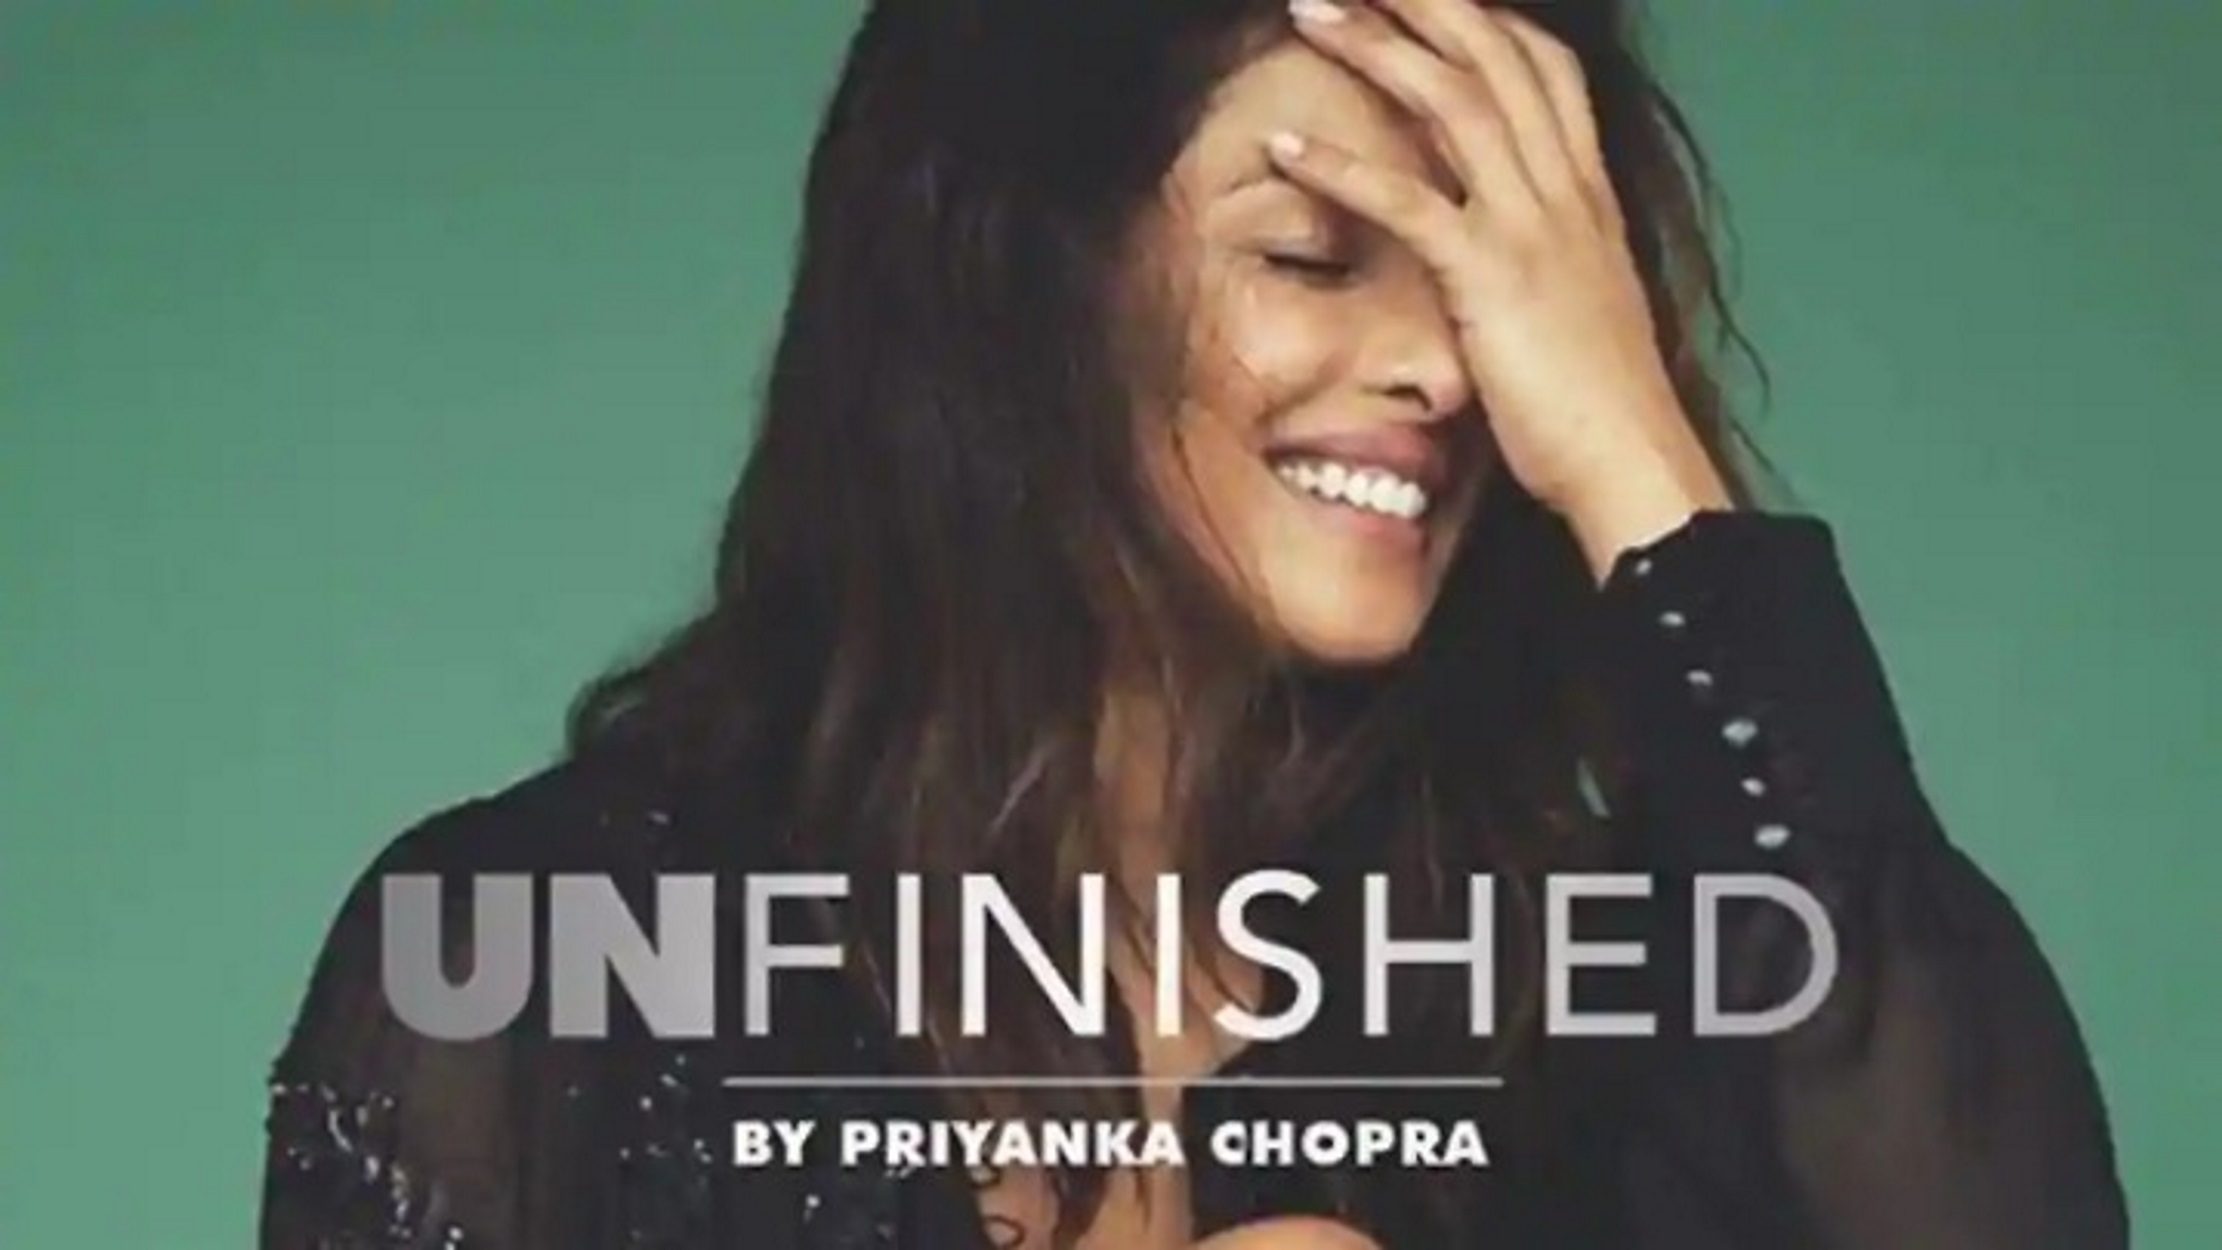 Η Πριγιάνκα Τσόπρα για το πρώτο της βιβλίο «Unfinished»